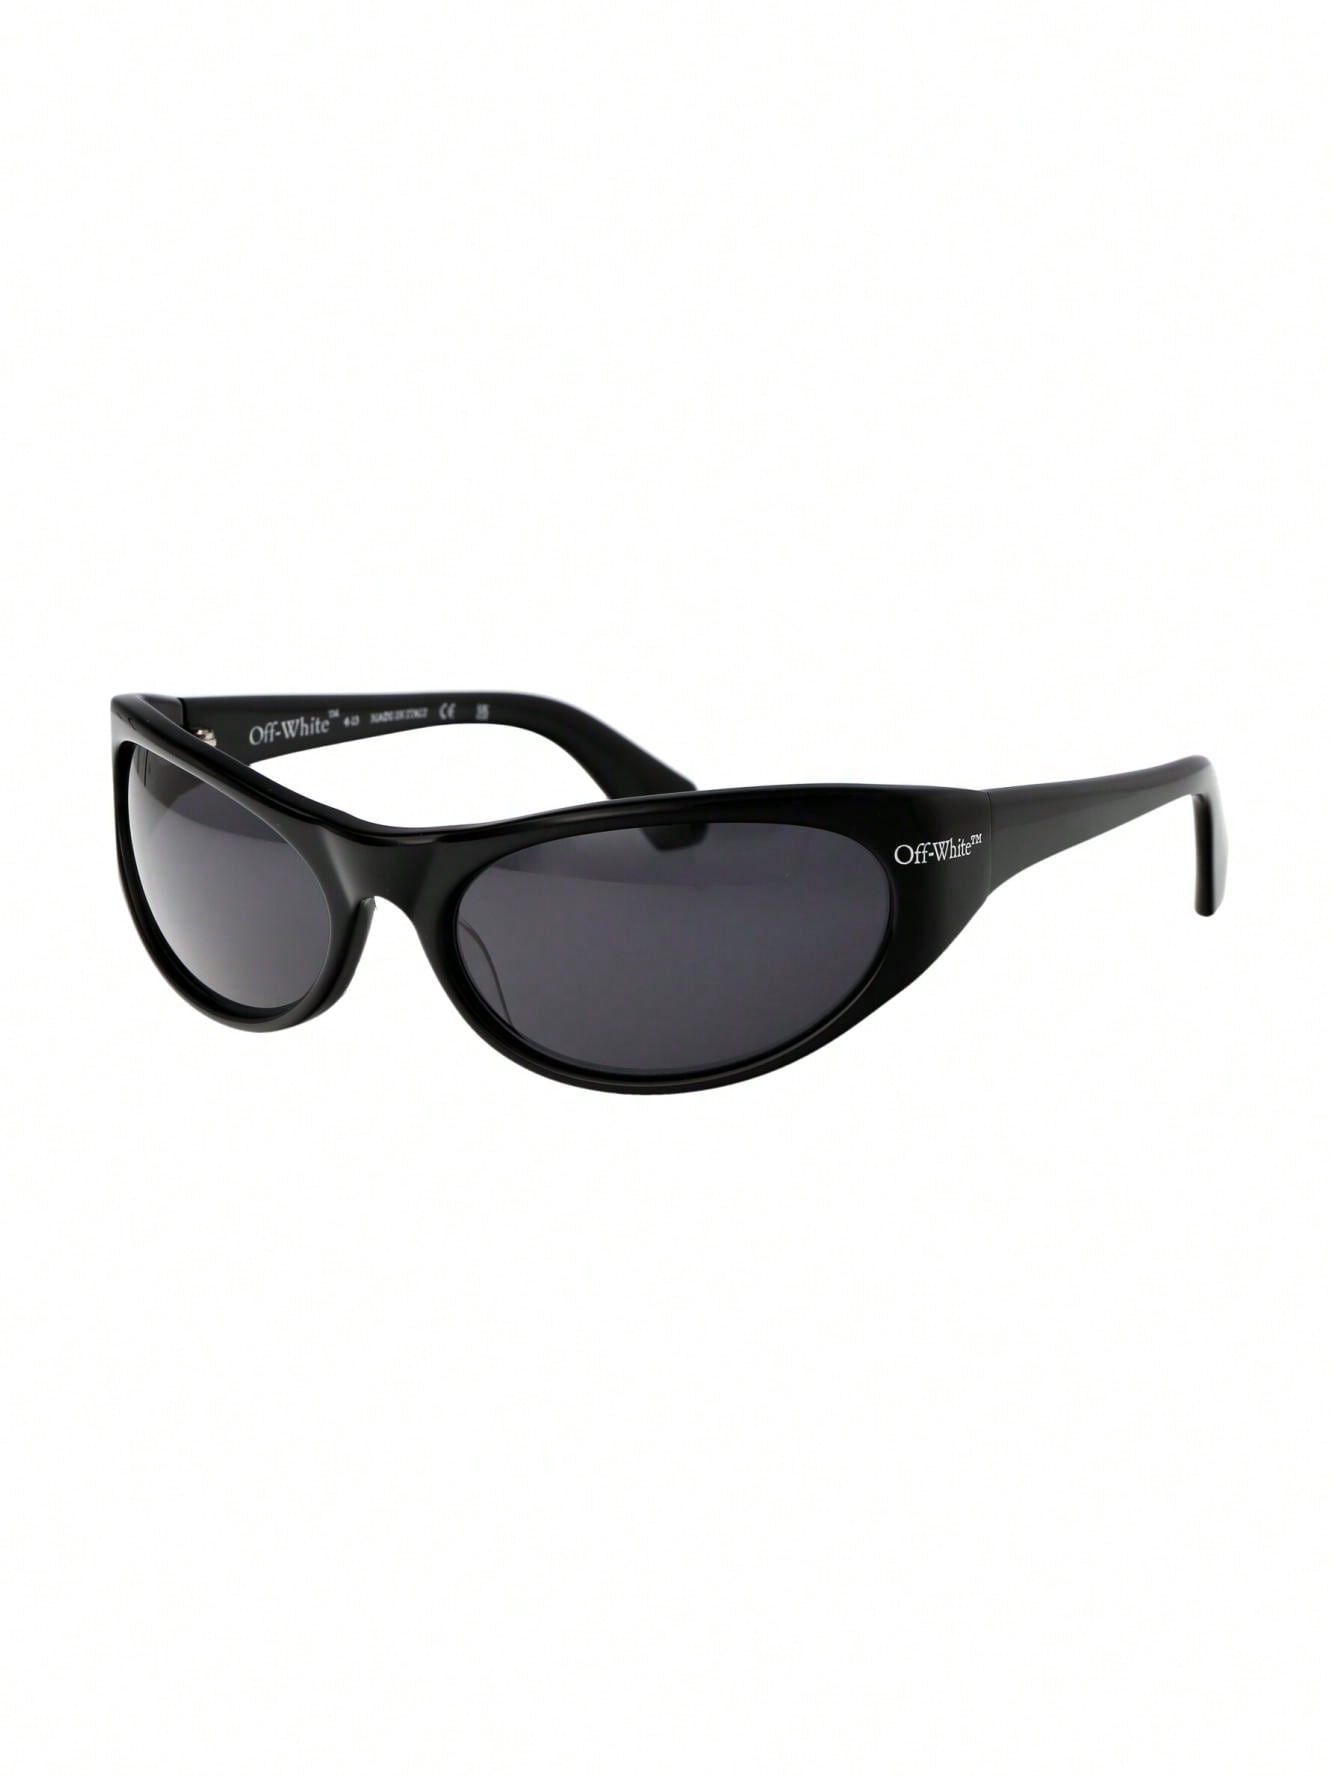 черные солнцезащитные очки на клипсе off white цвет black dark grey Мужские солнцезащитные очки Off-White ЧЕРНЫЕ OERI094F23PLA0011007, черный